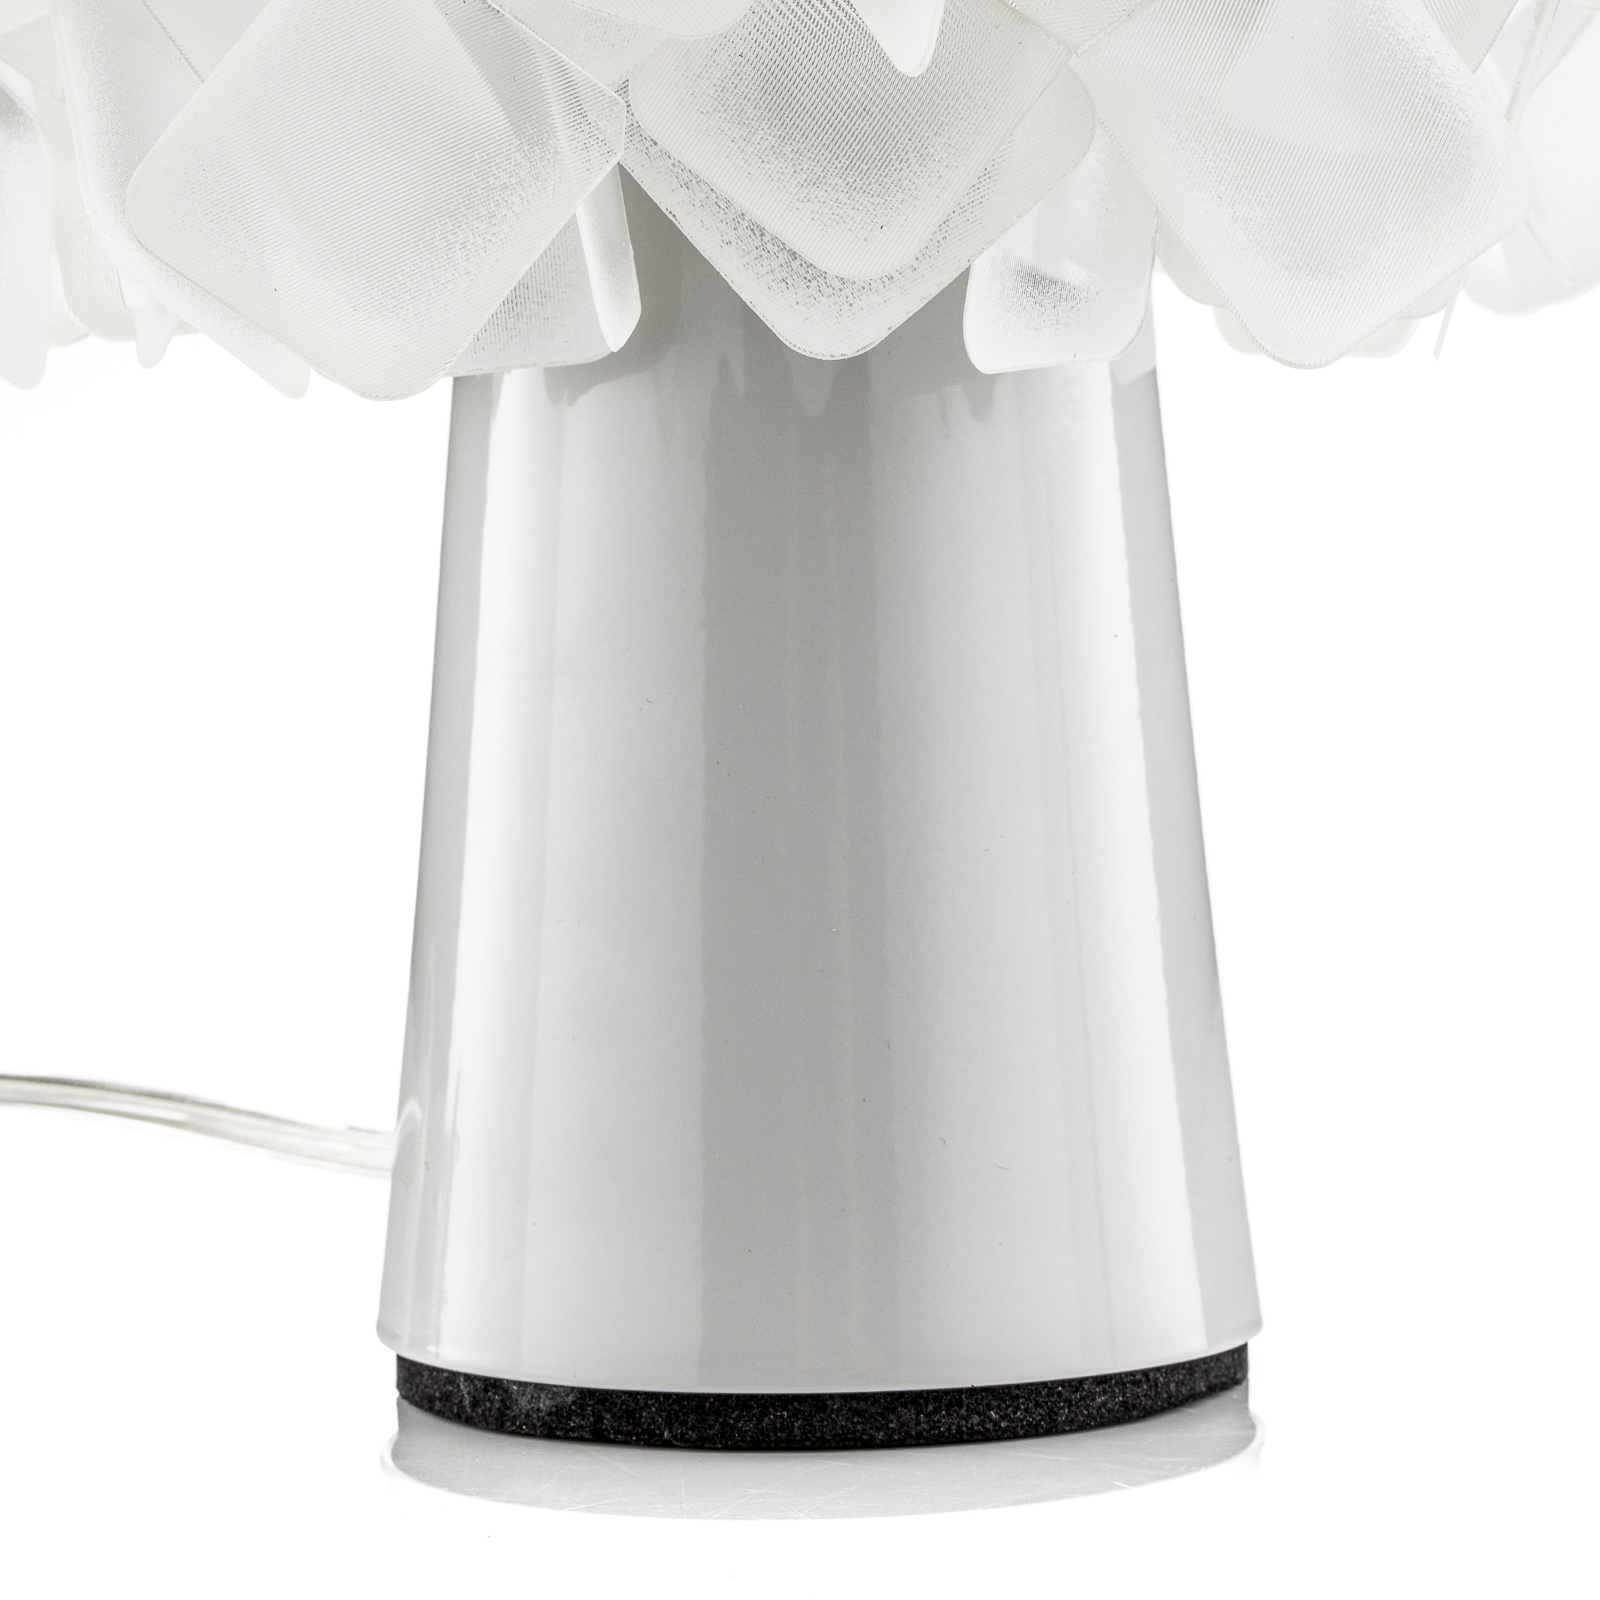 Slamp Clizia - designová stolní lampa, opálová